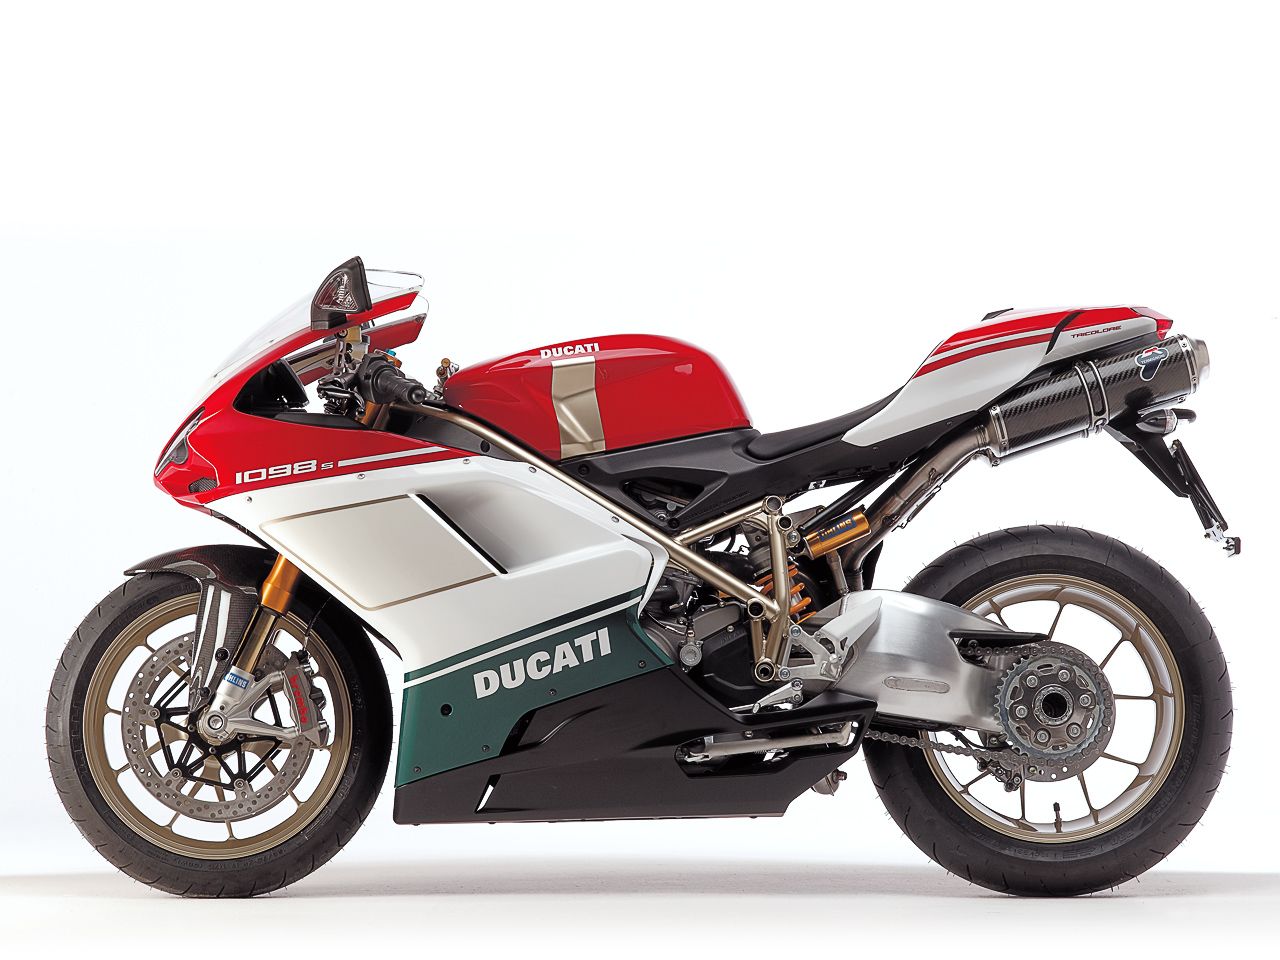 2007 Ducati 1098 S Tricolore